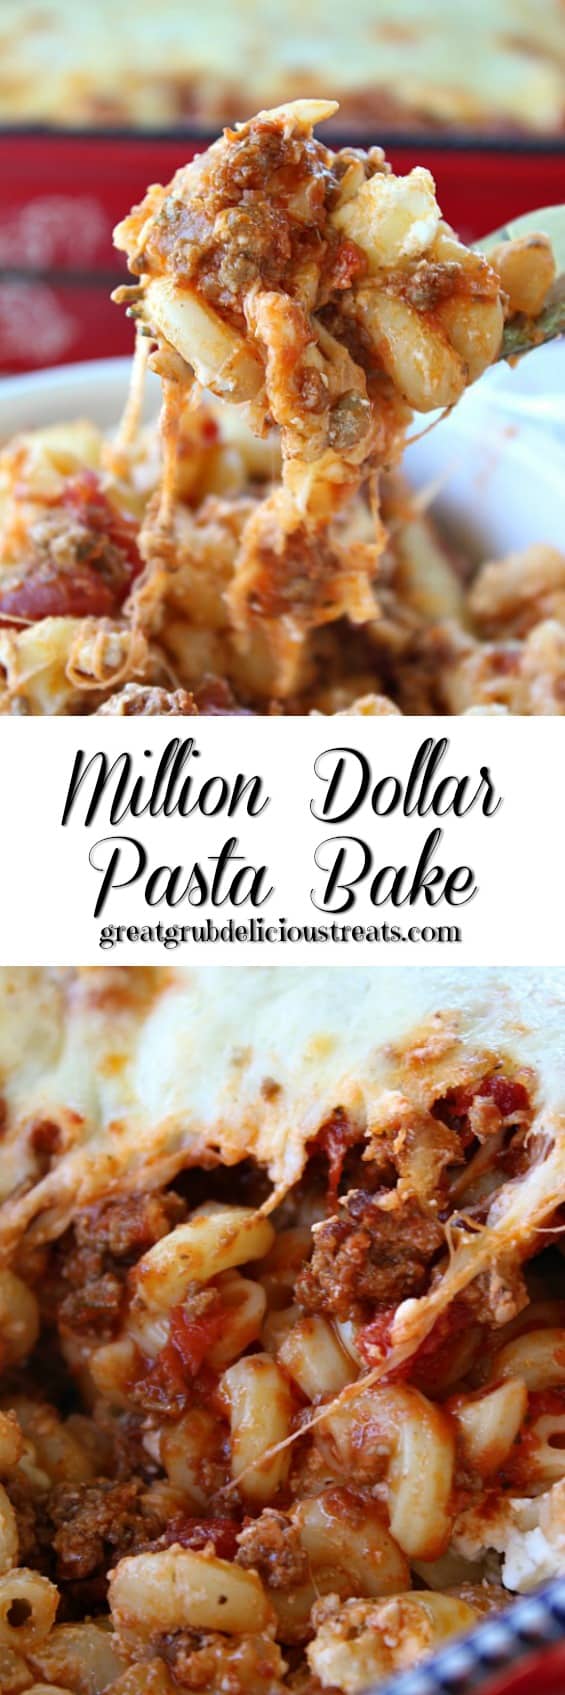 Million Dollar Pasta Bake